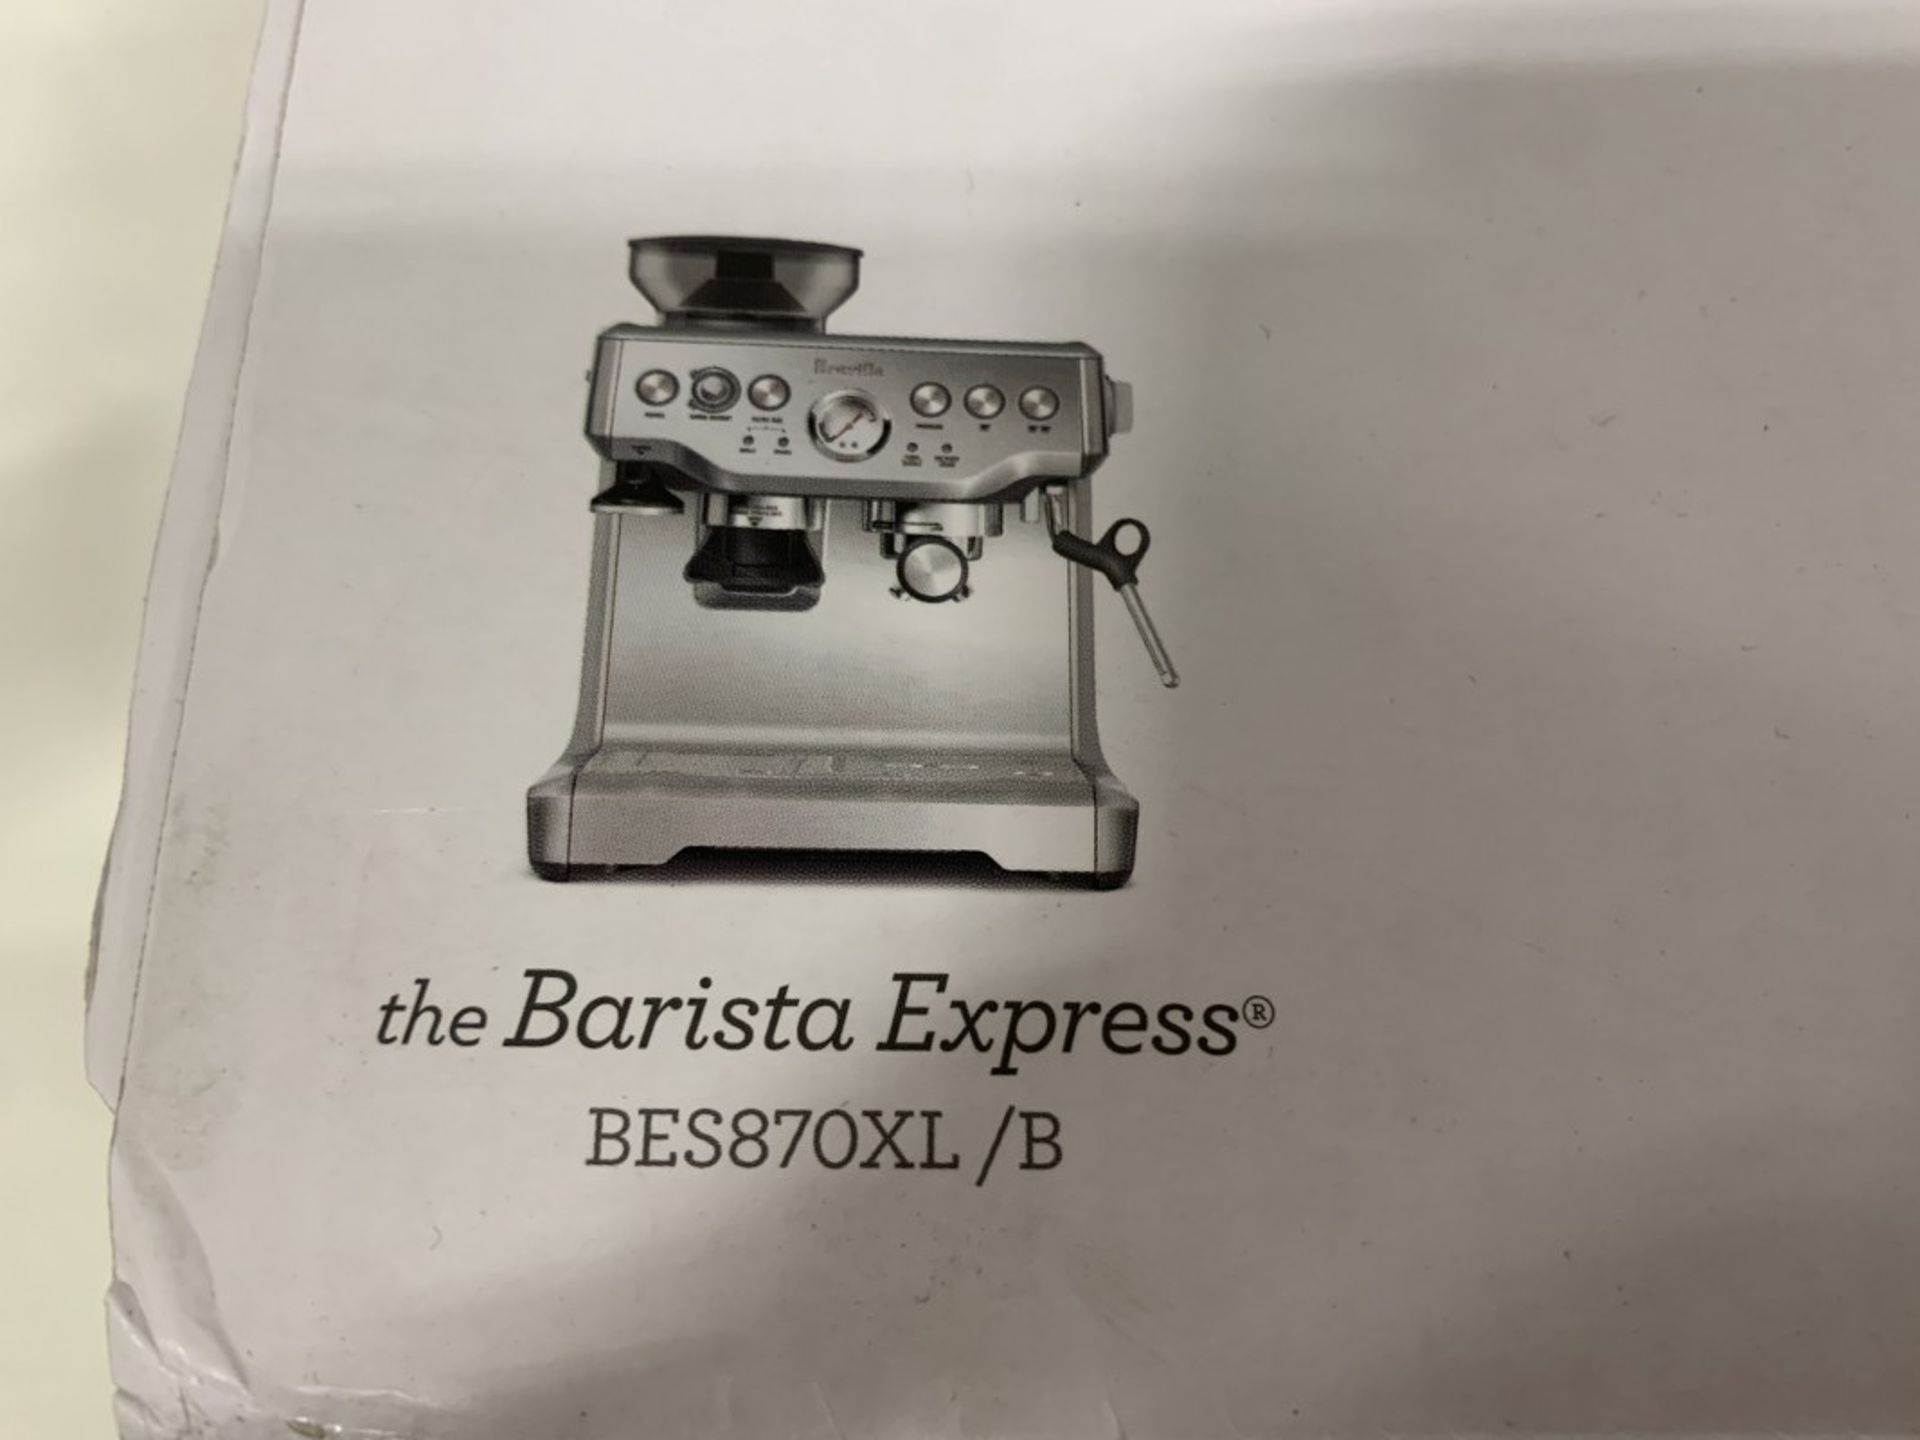 BREVILLE - THE BARISTA EXPRESS ESPRESSO MACHINE - Image 3 of 3